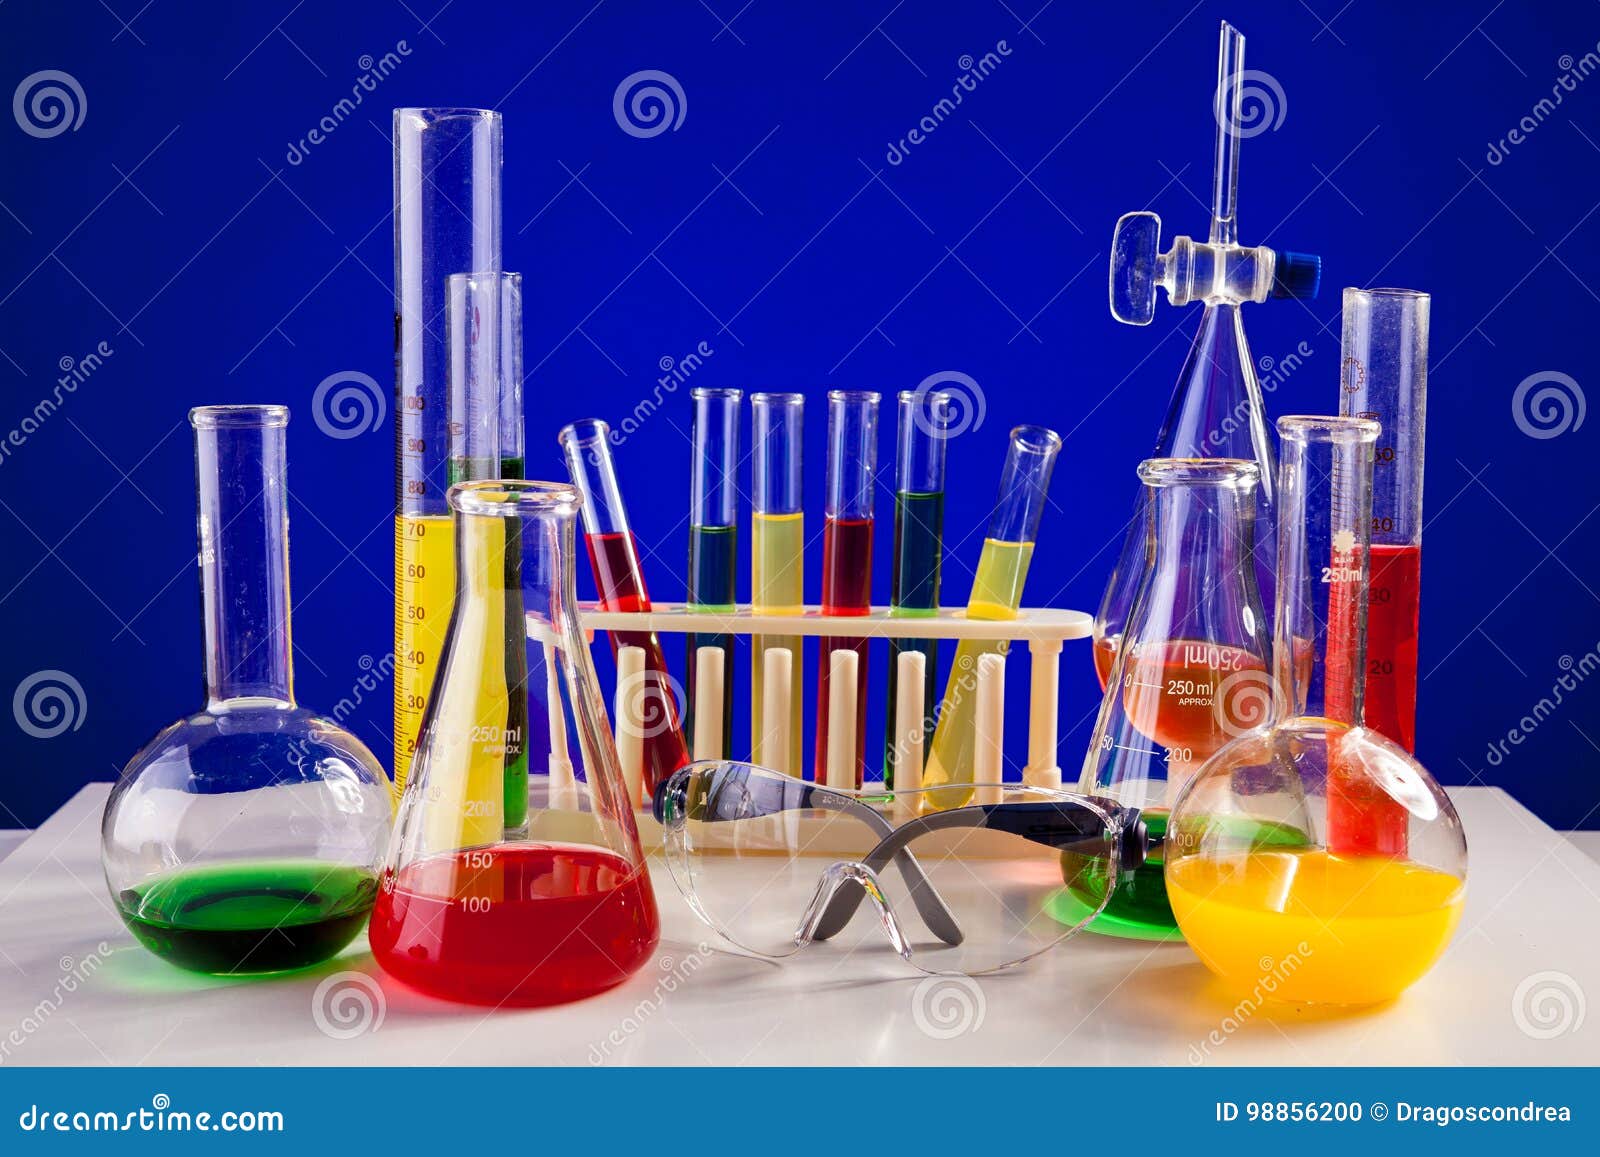 Цветная химия. Колбы химические. Химия лаборатория. Атрибуты химической лаборатории.